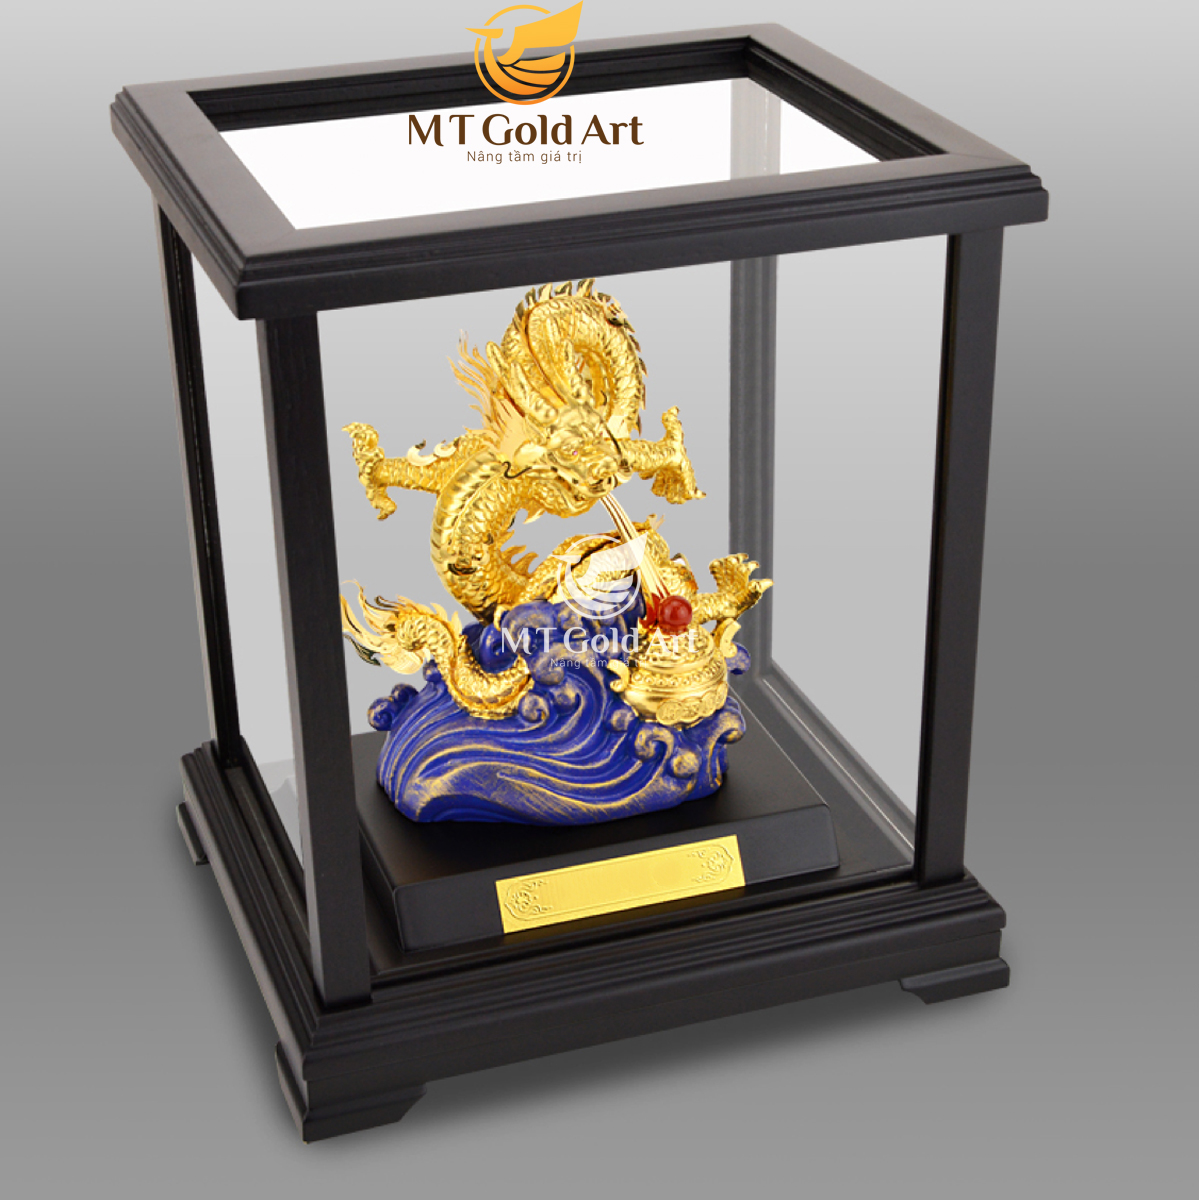 Hình ảnh Tượng Rồng phong thủy nhả ngọc dát vàng (17x20x24cm) MT Gold Art- Hàng chính hãng, trang trí nhà cửa, phòng làm việc, quà tặng sếp, đối tác, khách hàng, tân gia, khai trương 